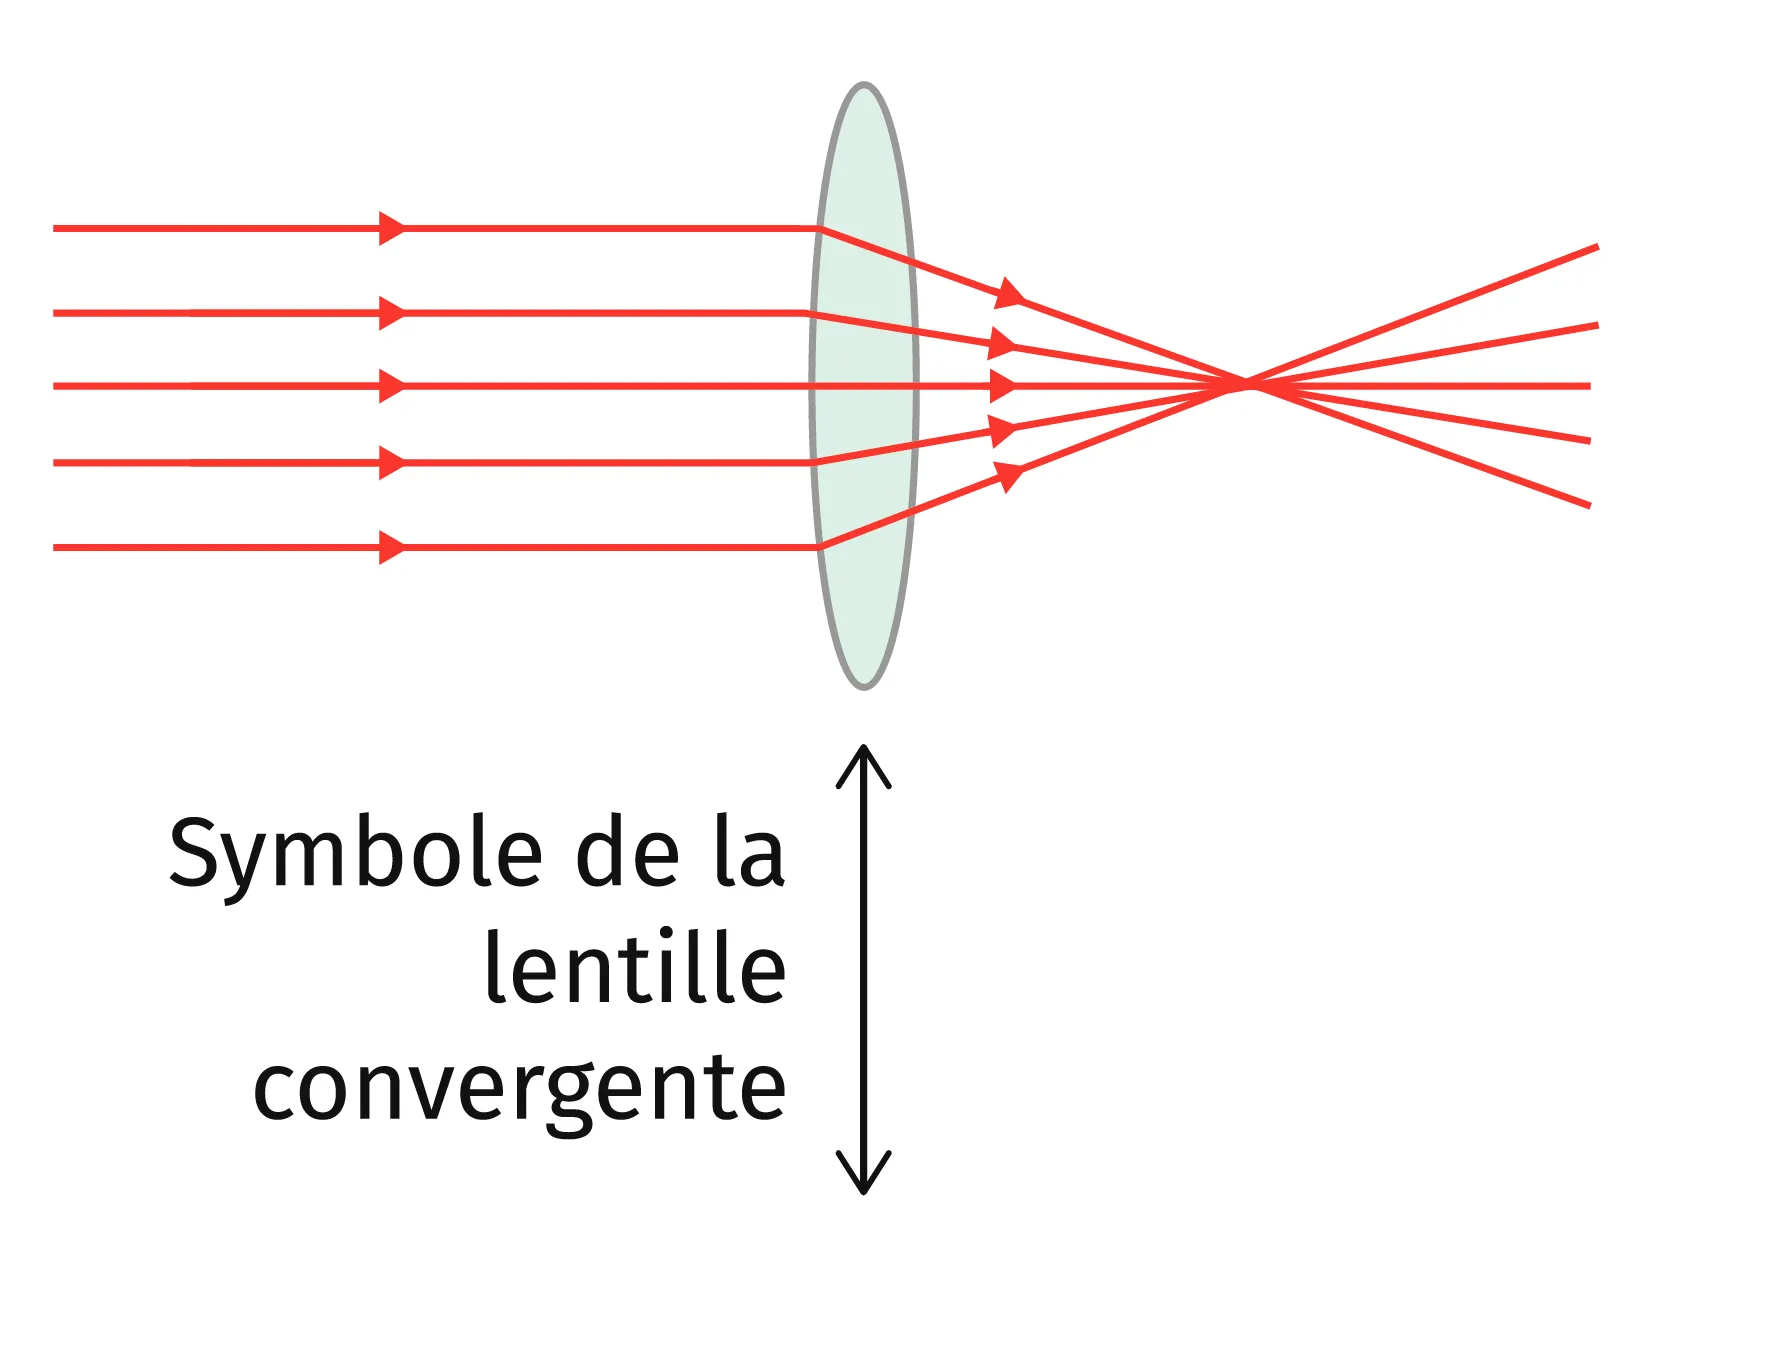 La lentille convergente